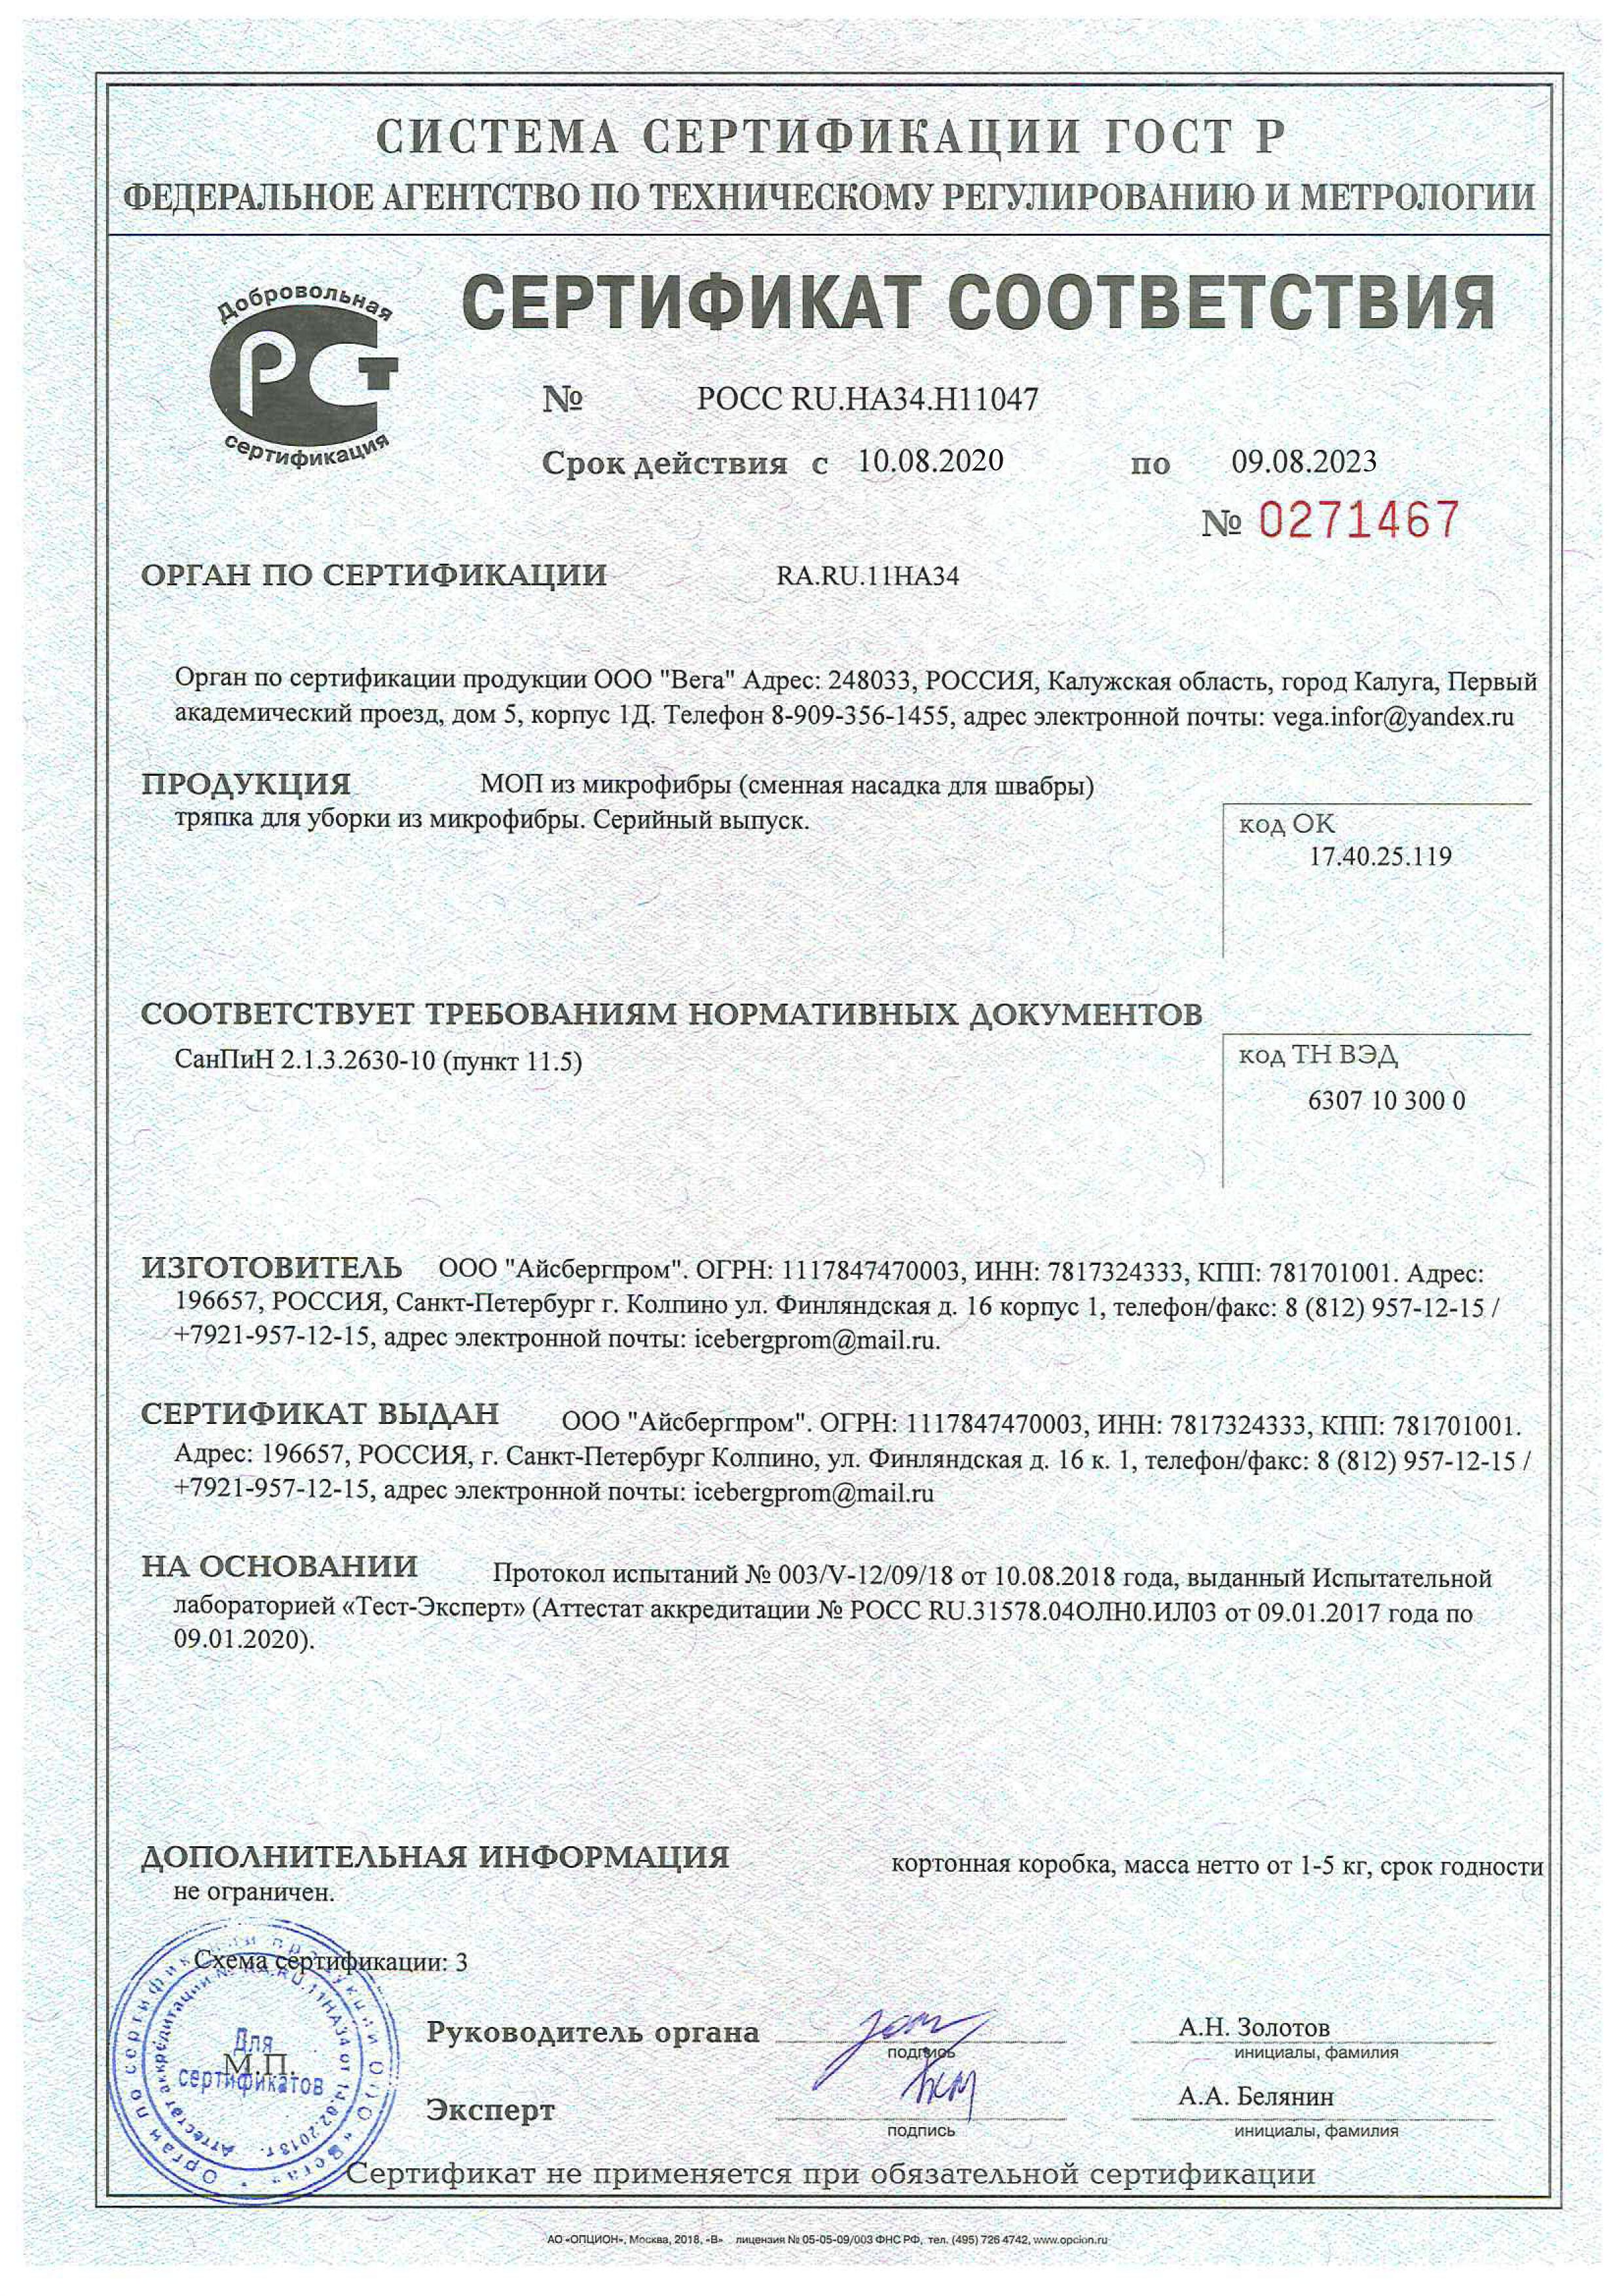 Сертификат качества МОПы Айсбергпром